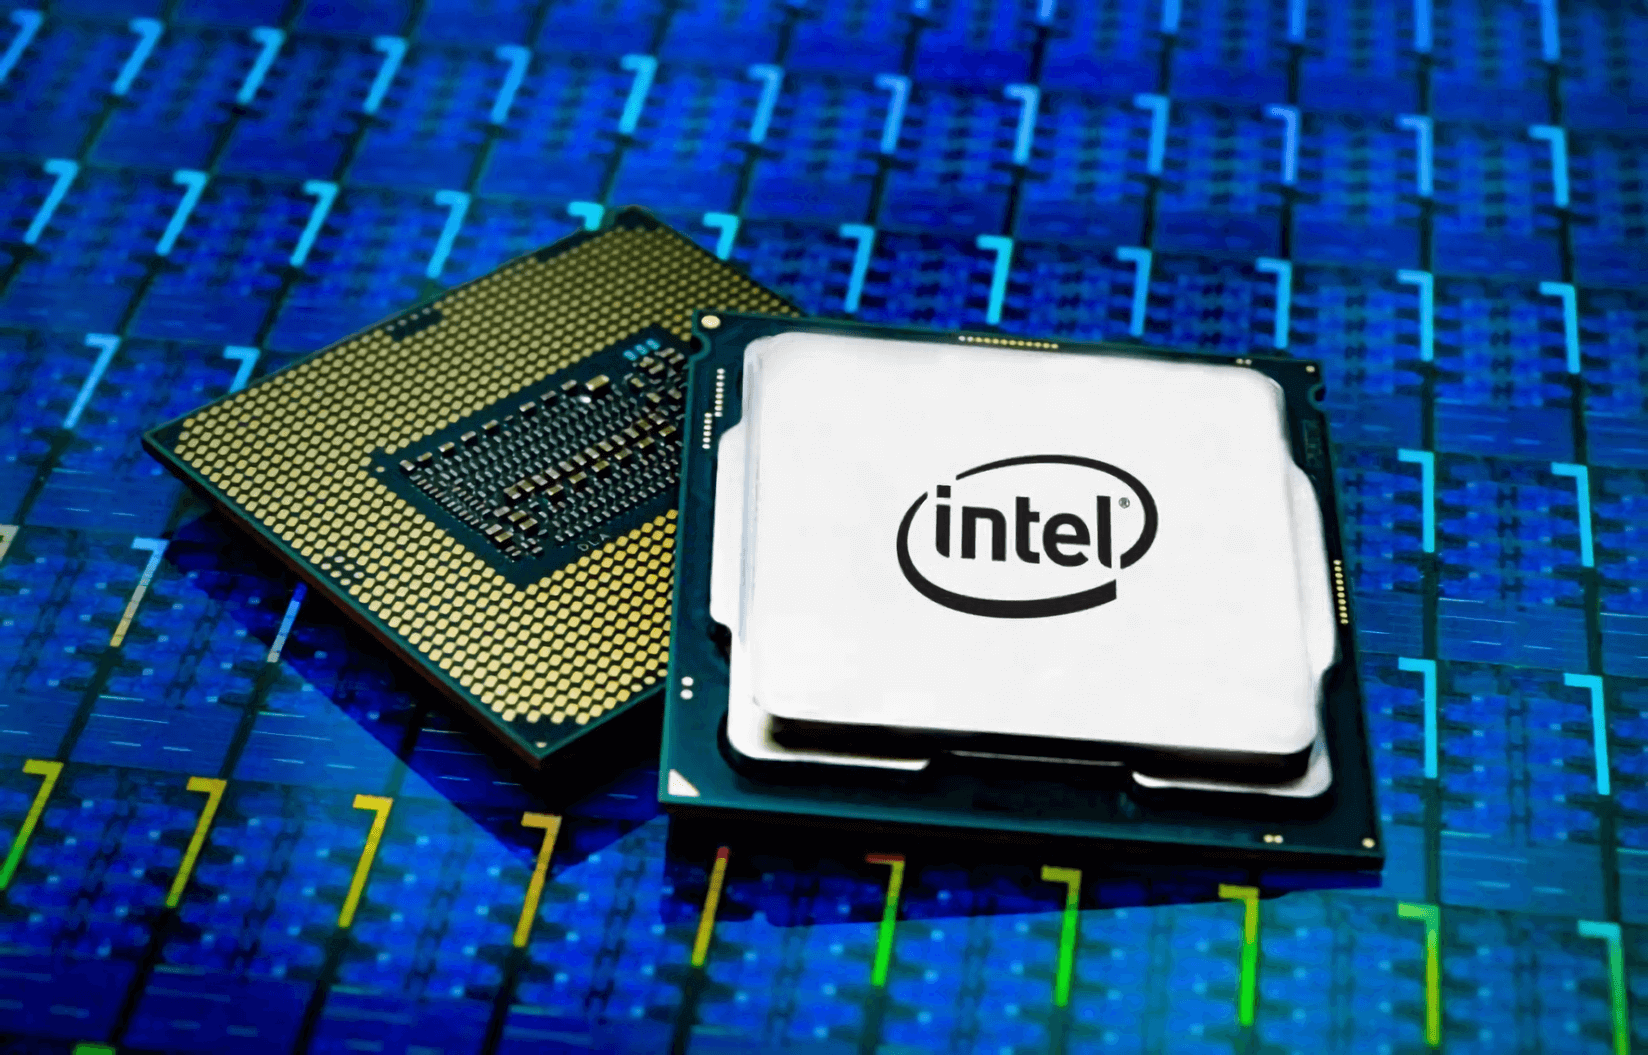 Η Intel είναι έτοιμη να τα βάλει με την AMD με τους Tiger Lake επεξεργαστές 8 πυρήνων για laptops